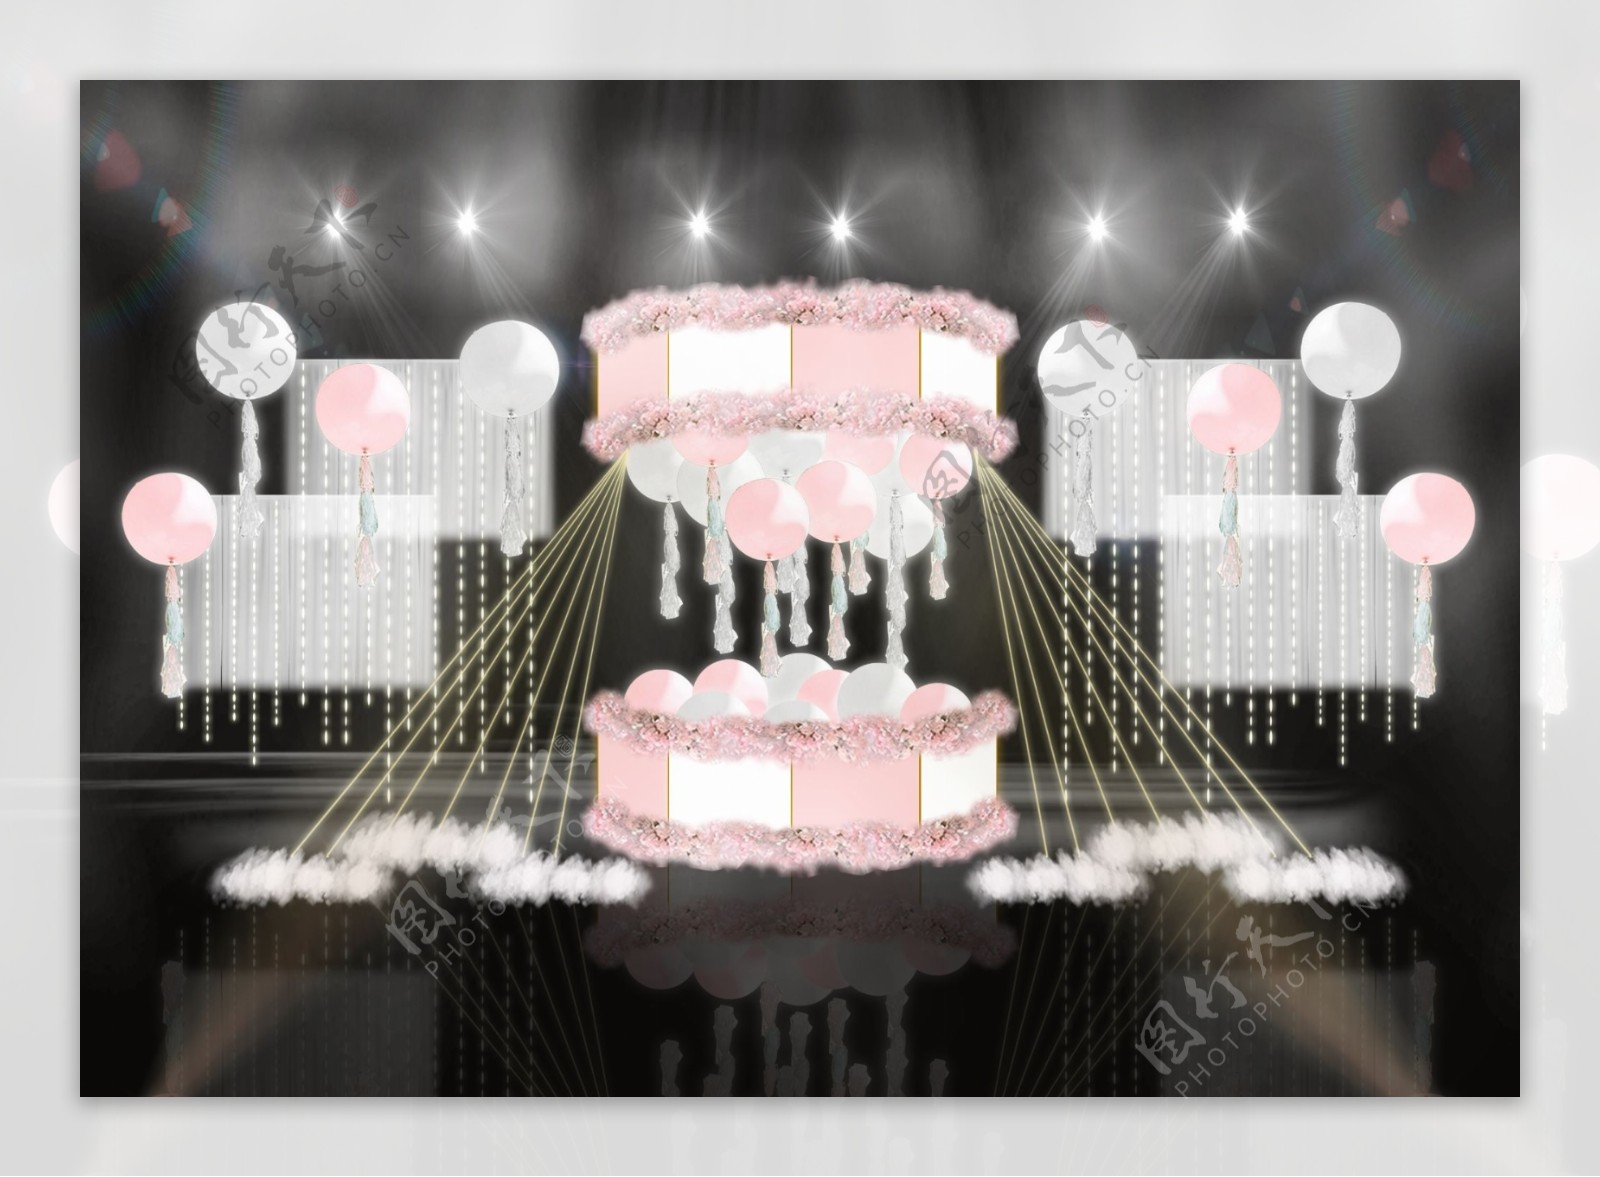 粉色系气球沙漏造型旋转木马纱幔婚礼效果图